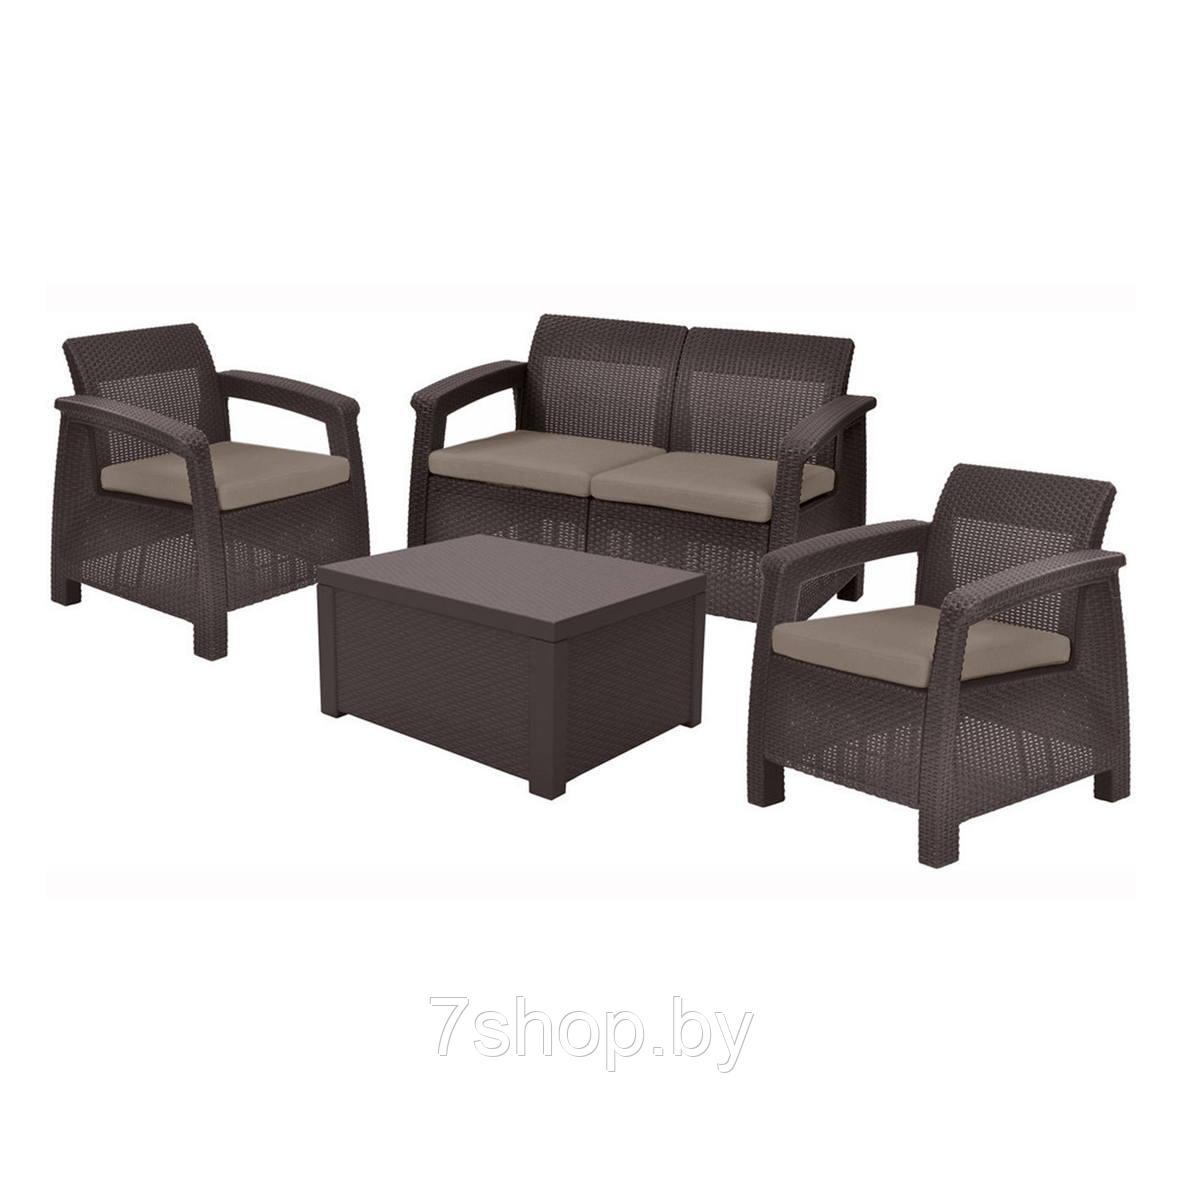 Комплект мебели Corfu Box Set (2 кресла, 1 скамья+столик), коричневый